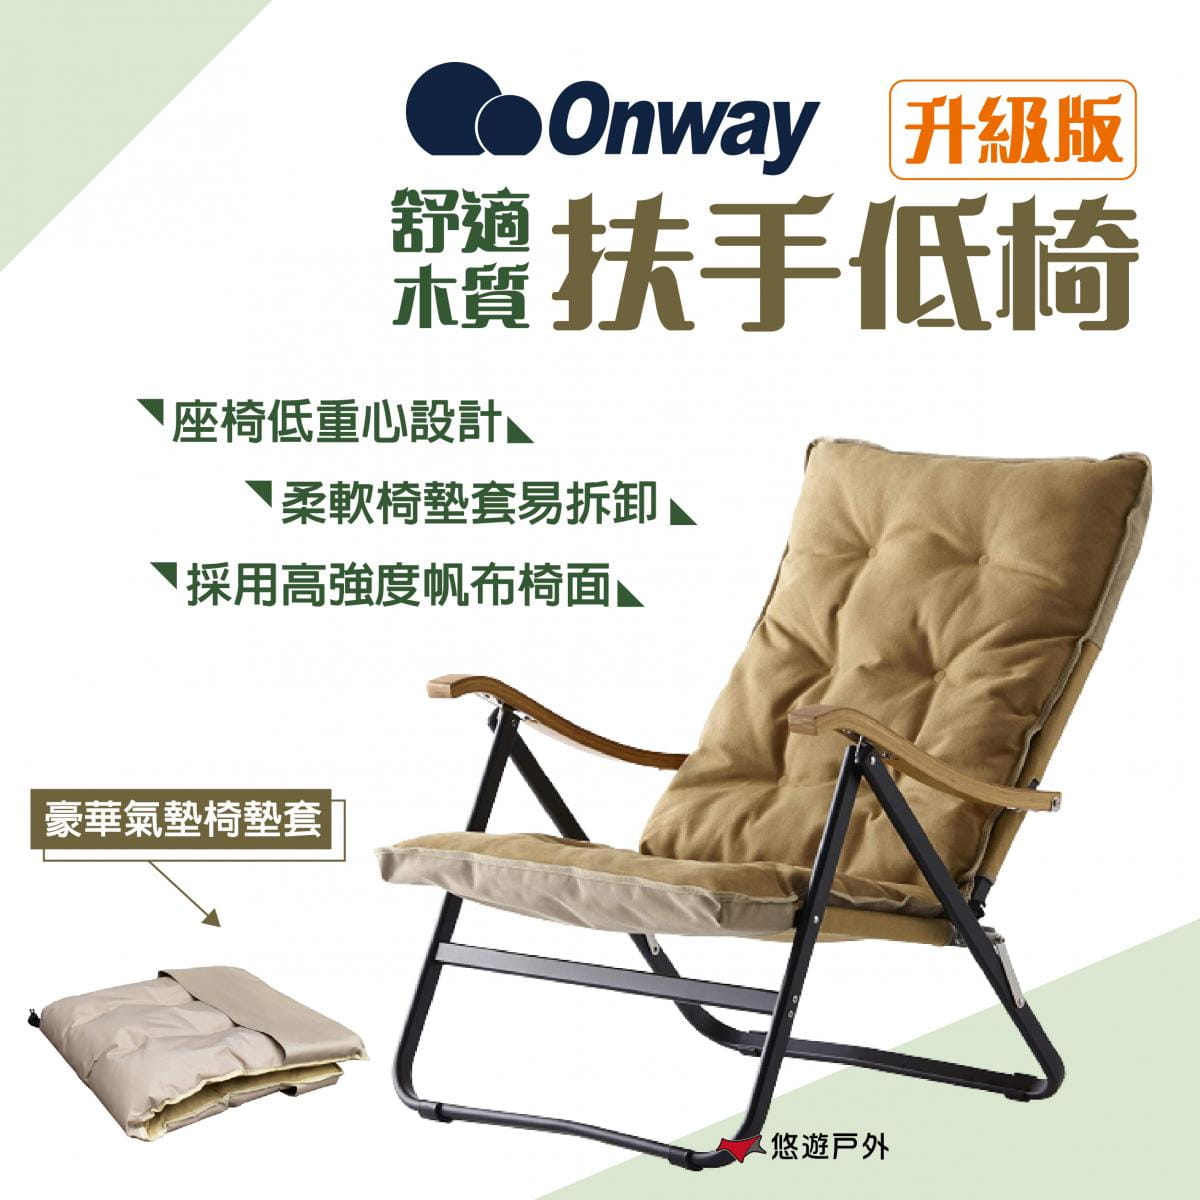 【ONWAY】舒適木質扶手低椅升級版 OW-61BD-BMPLUS (悠遊戶外) 0